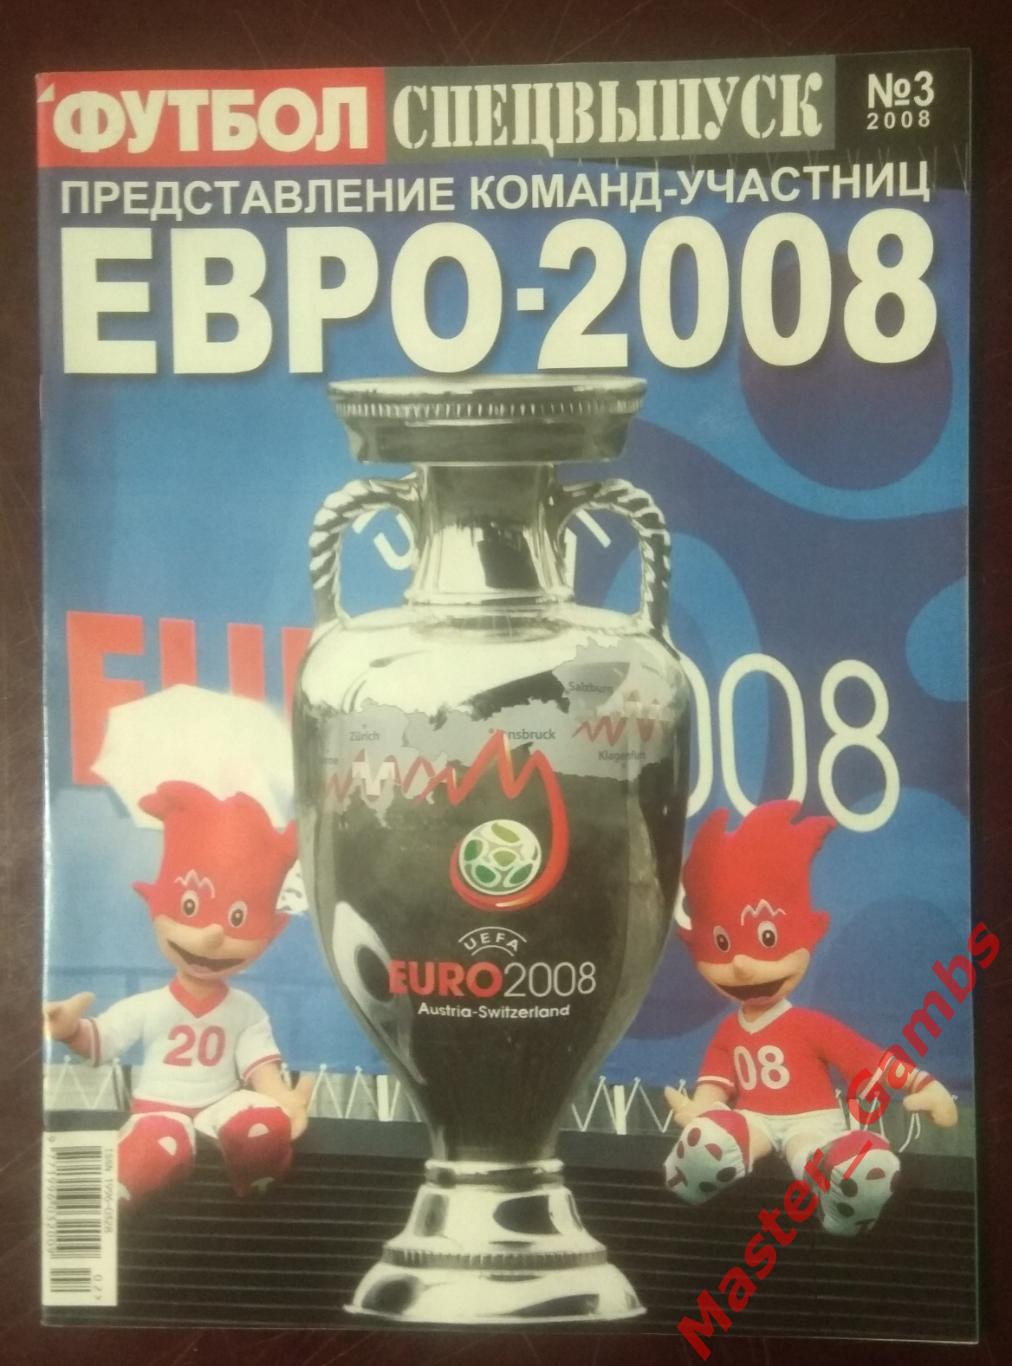 Еженедельник Футбол - спецвыпуск Чемпионат Европы 2008